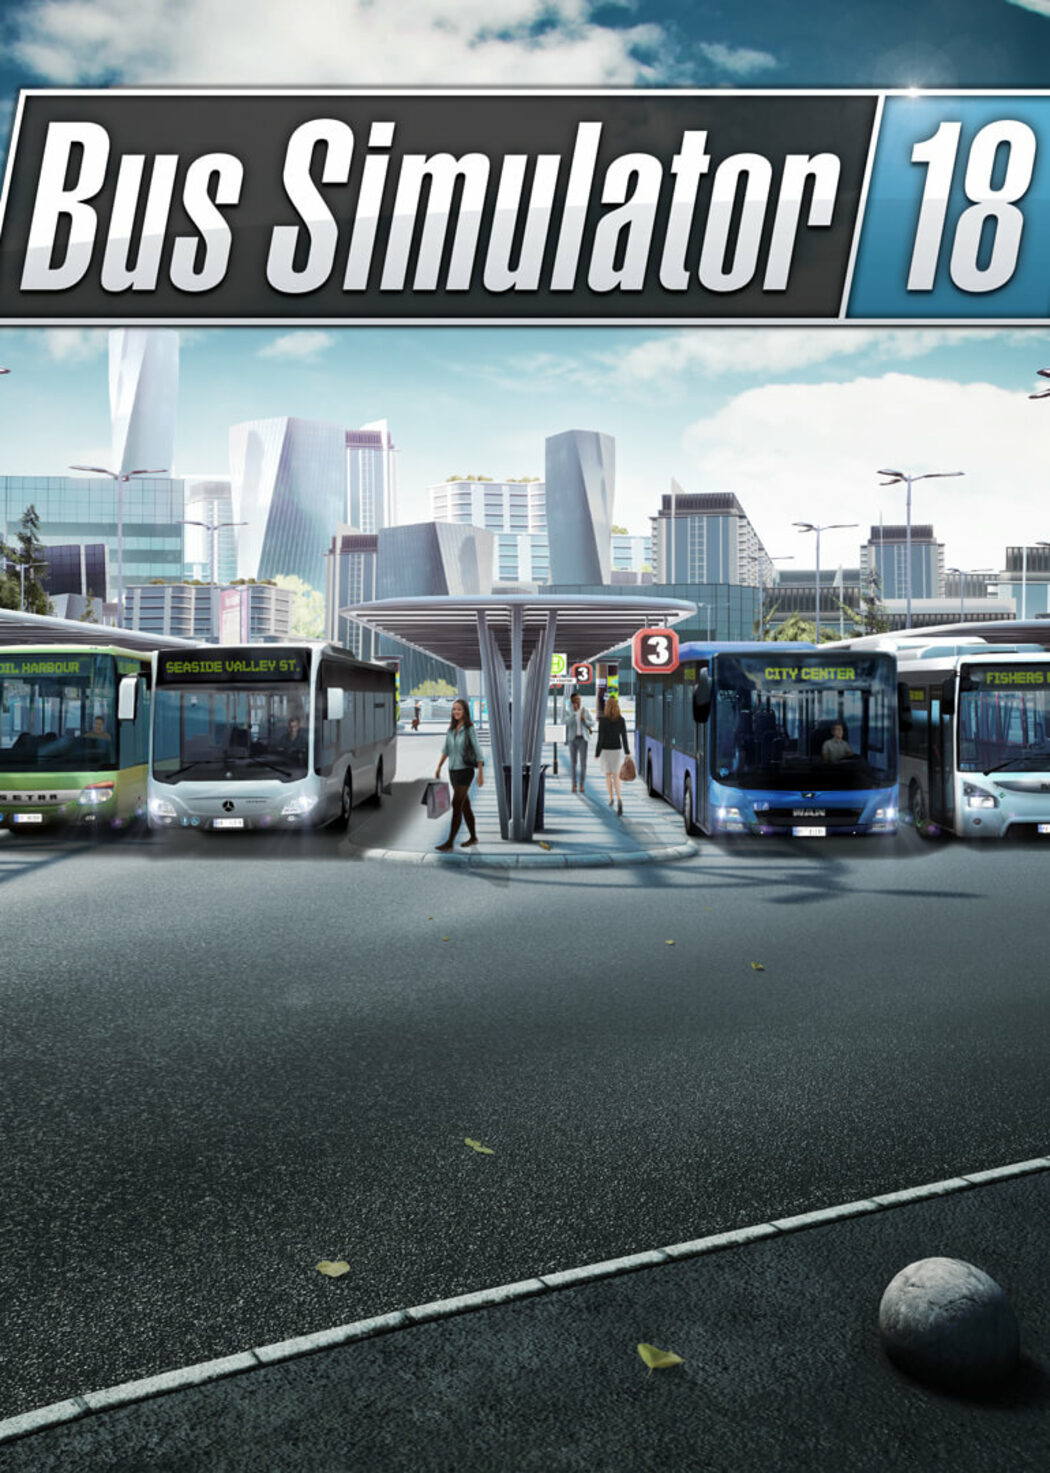 bus simulator 18 guild